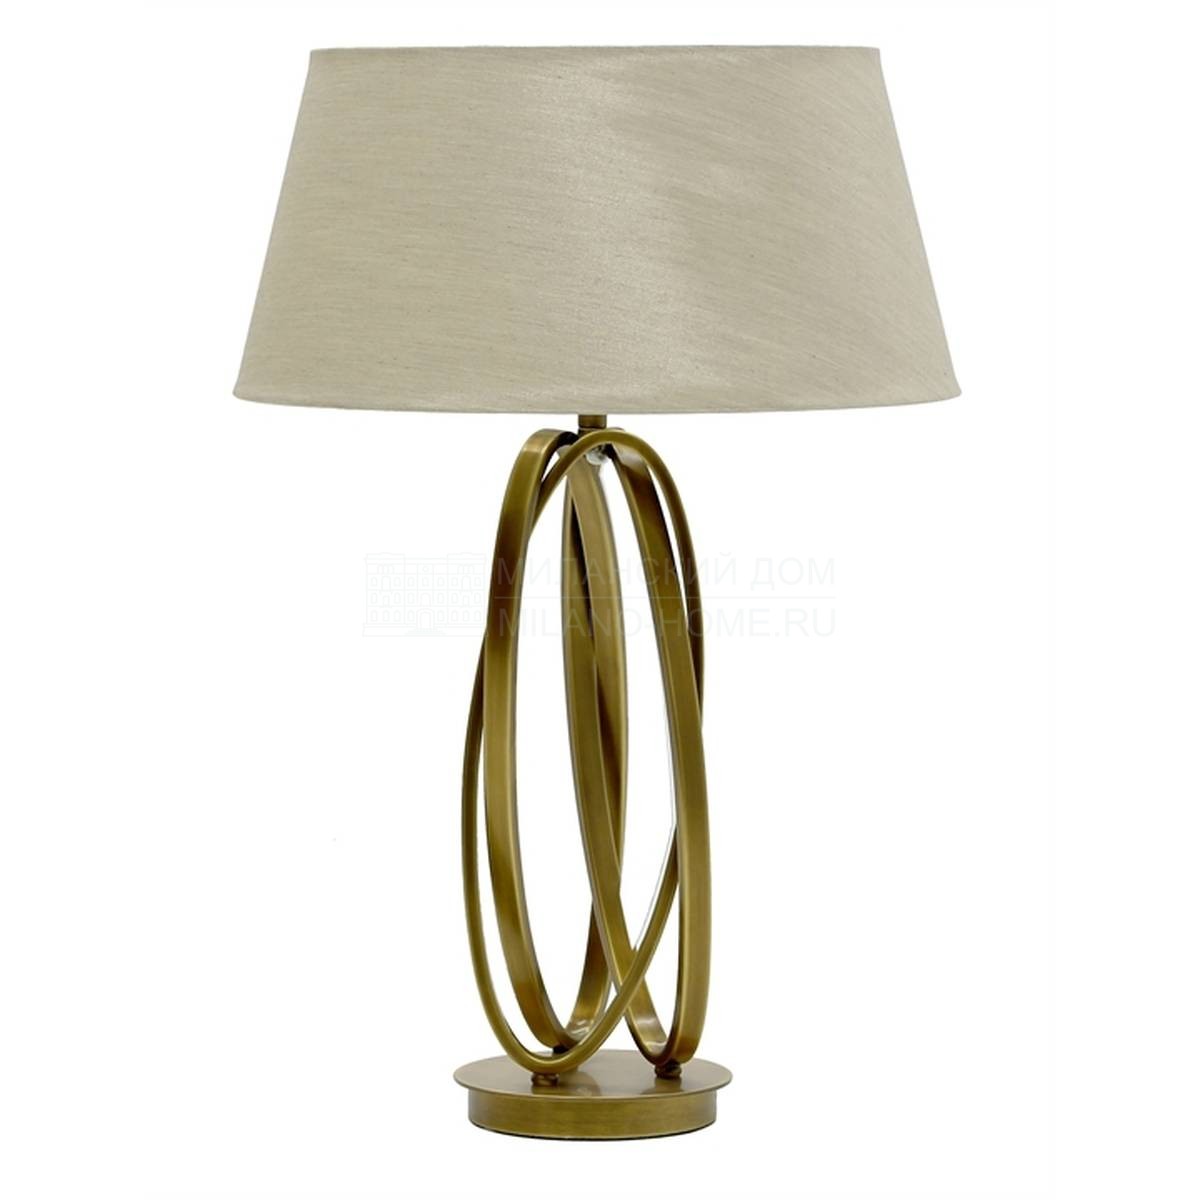 Настольная лампа Brass table из Великобритании фабрики THE SOFA & CHAIR Company